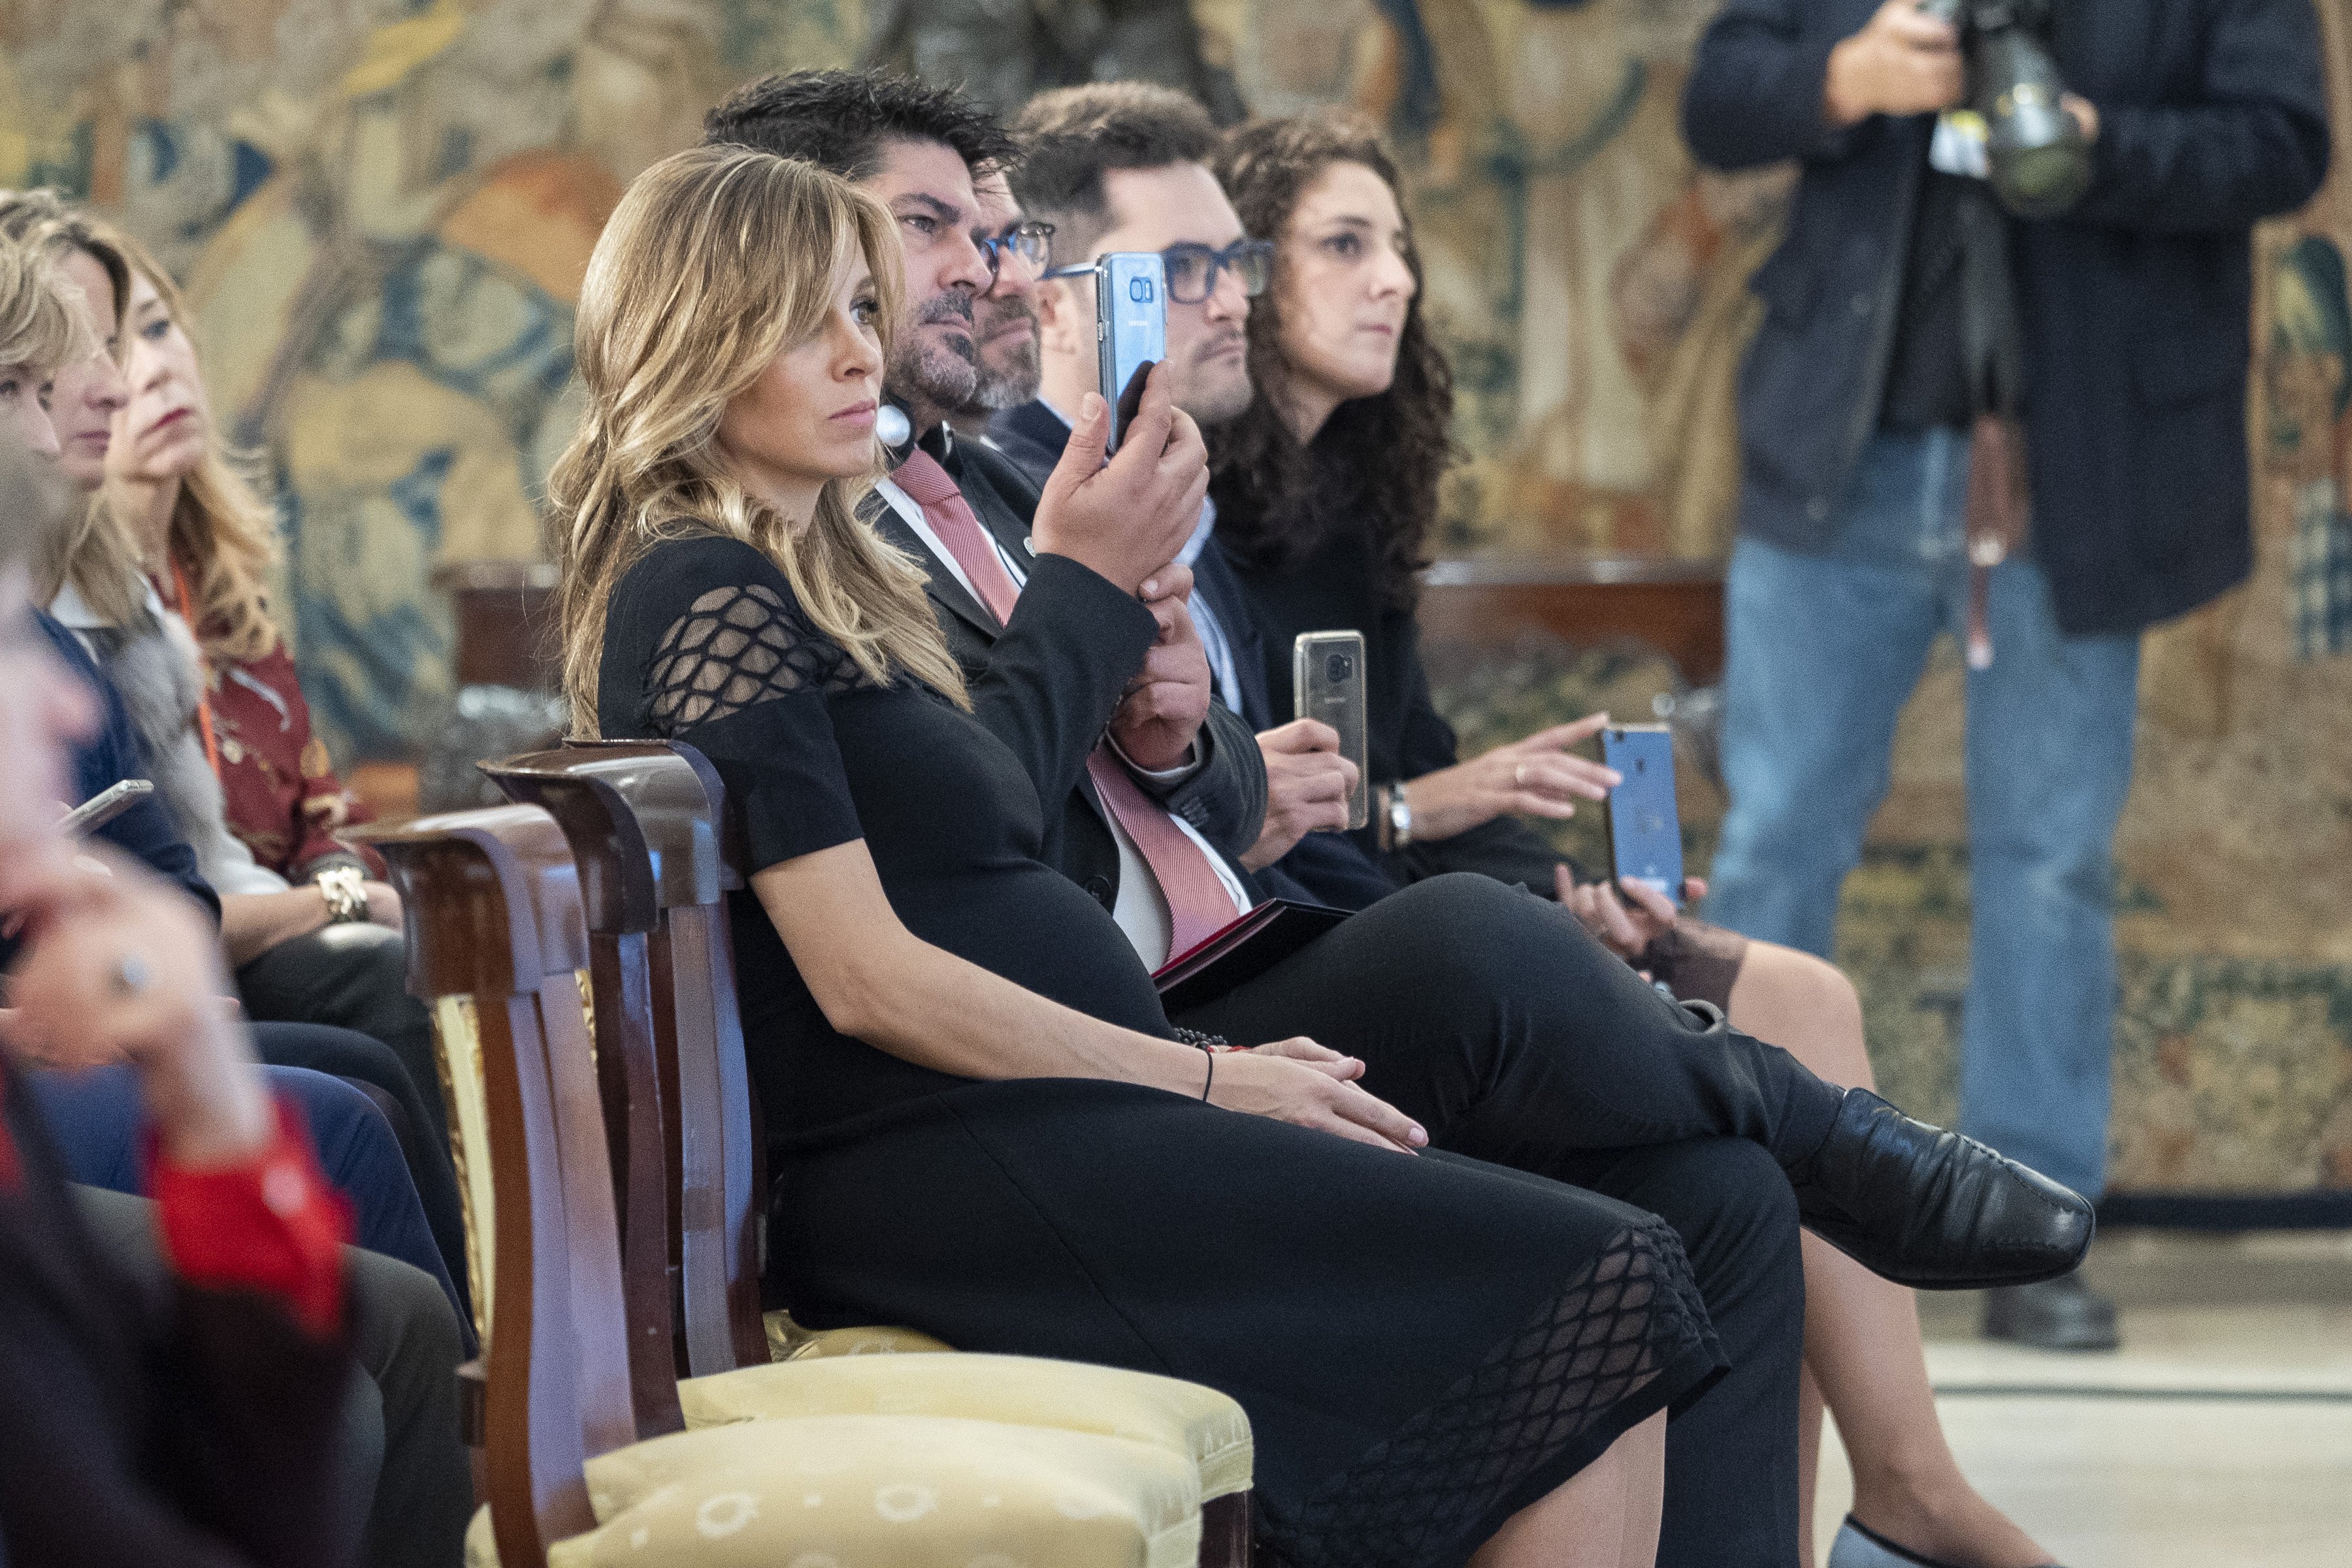 La publicista Alejandra Silva durante una reunión con el presidente del Gobierno español en el Palacio de la Moncloa, el 25 de octubre de 2018 en Madrid, España. ┃ Foto: Getty Images